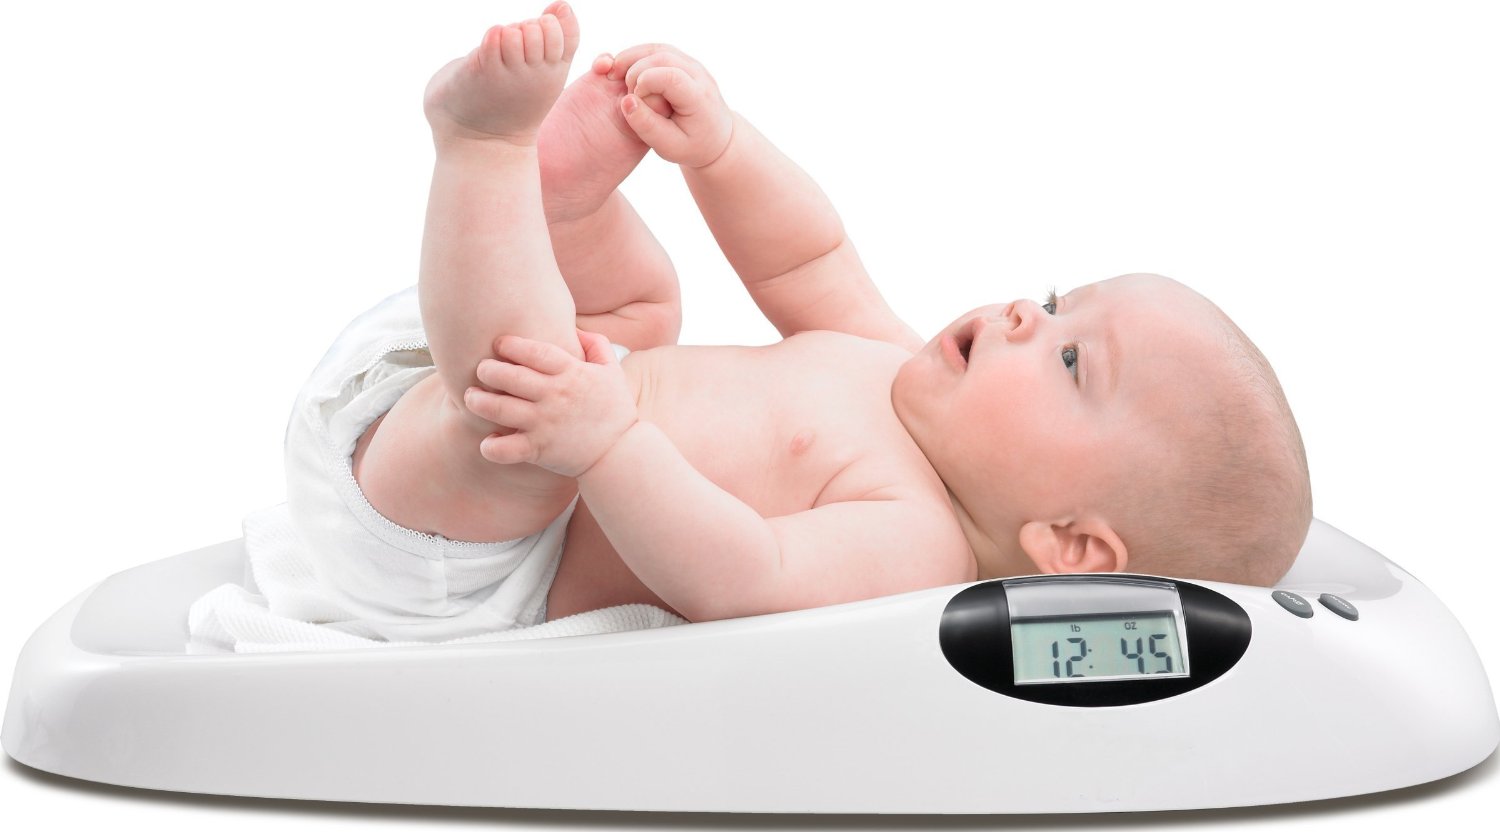 Tìm hiểu nguyên nhân khiến trẻ sơ sinh tăng cân chậm